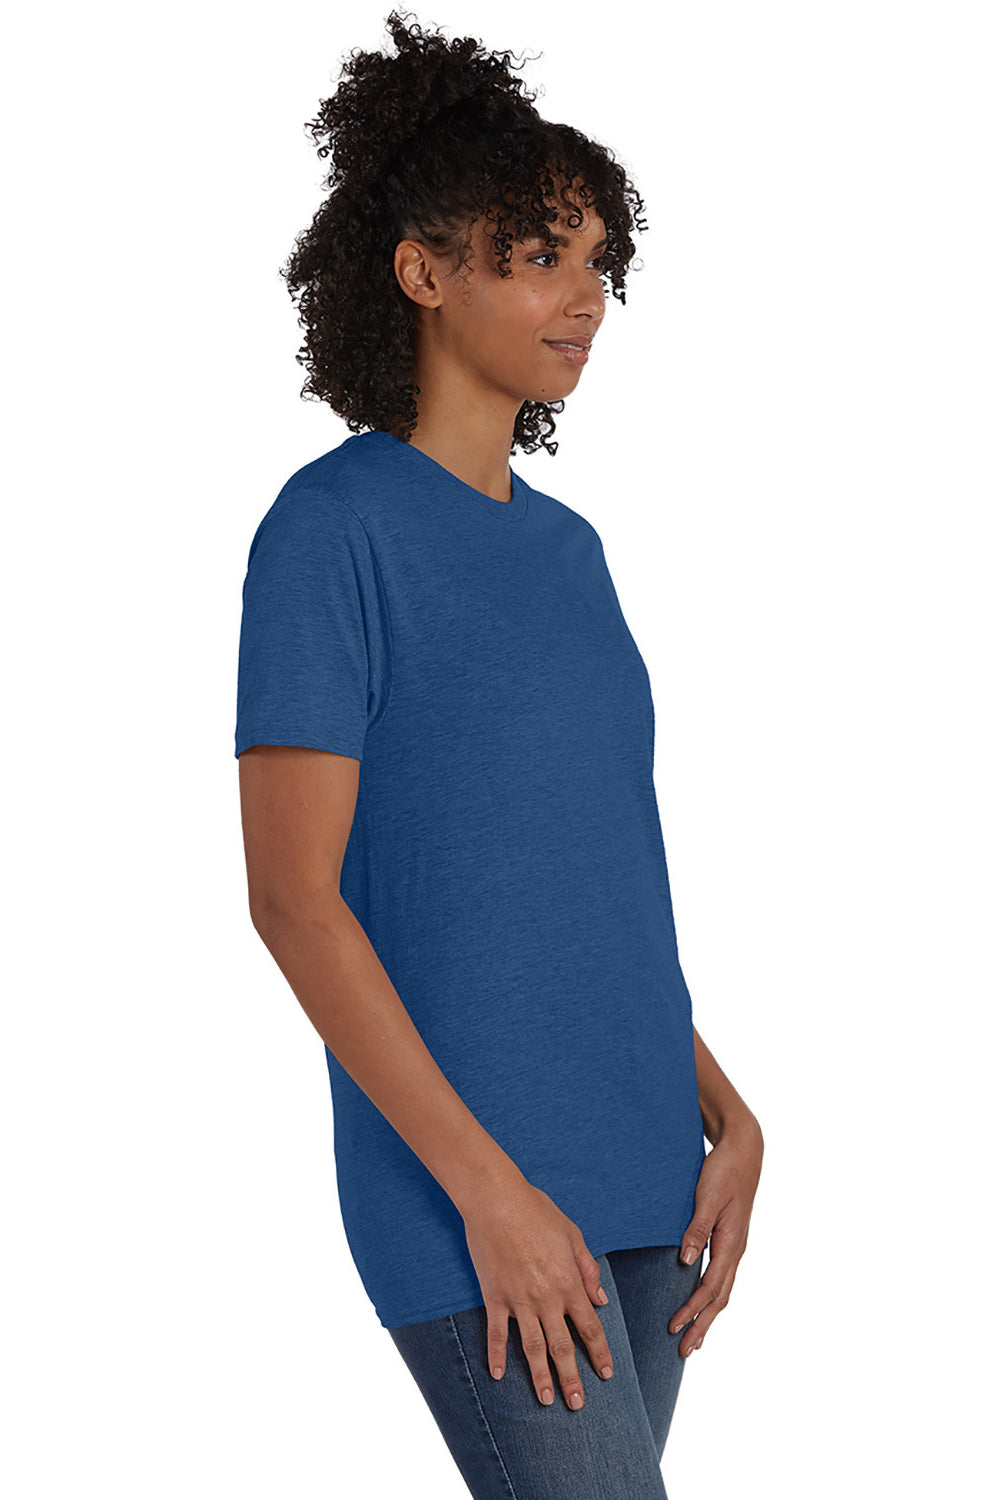 Hanes 4980 Mens Nano-T Short Sleeve Crewneck T-Shirt Heather Regal Navy Blue 3Q